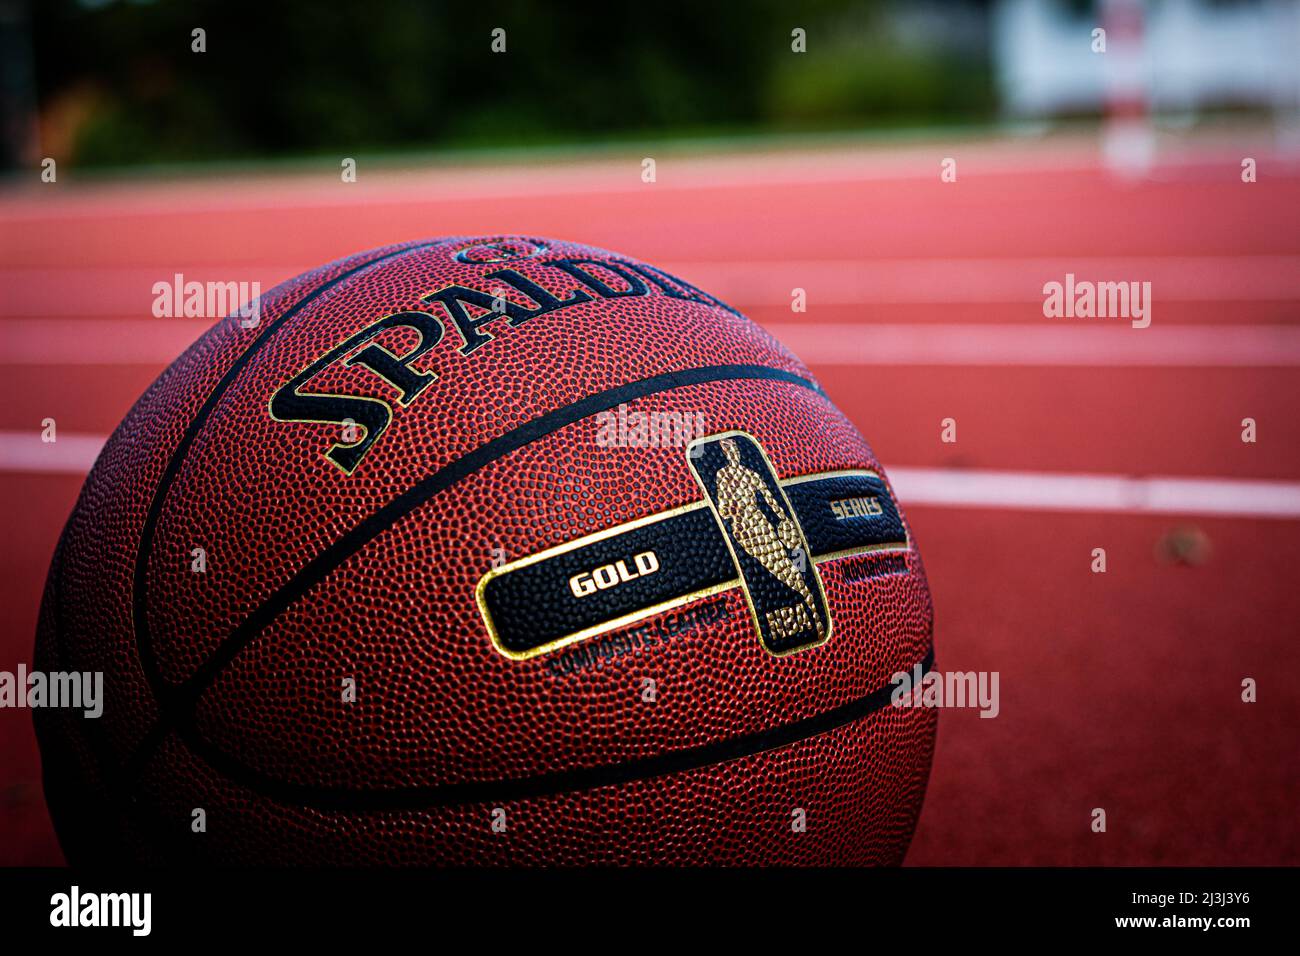 basket-ball sur le terrain de basket-ball Banque D'Images